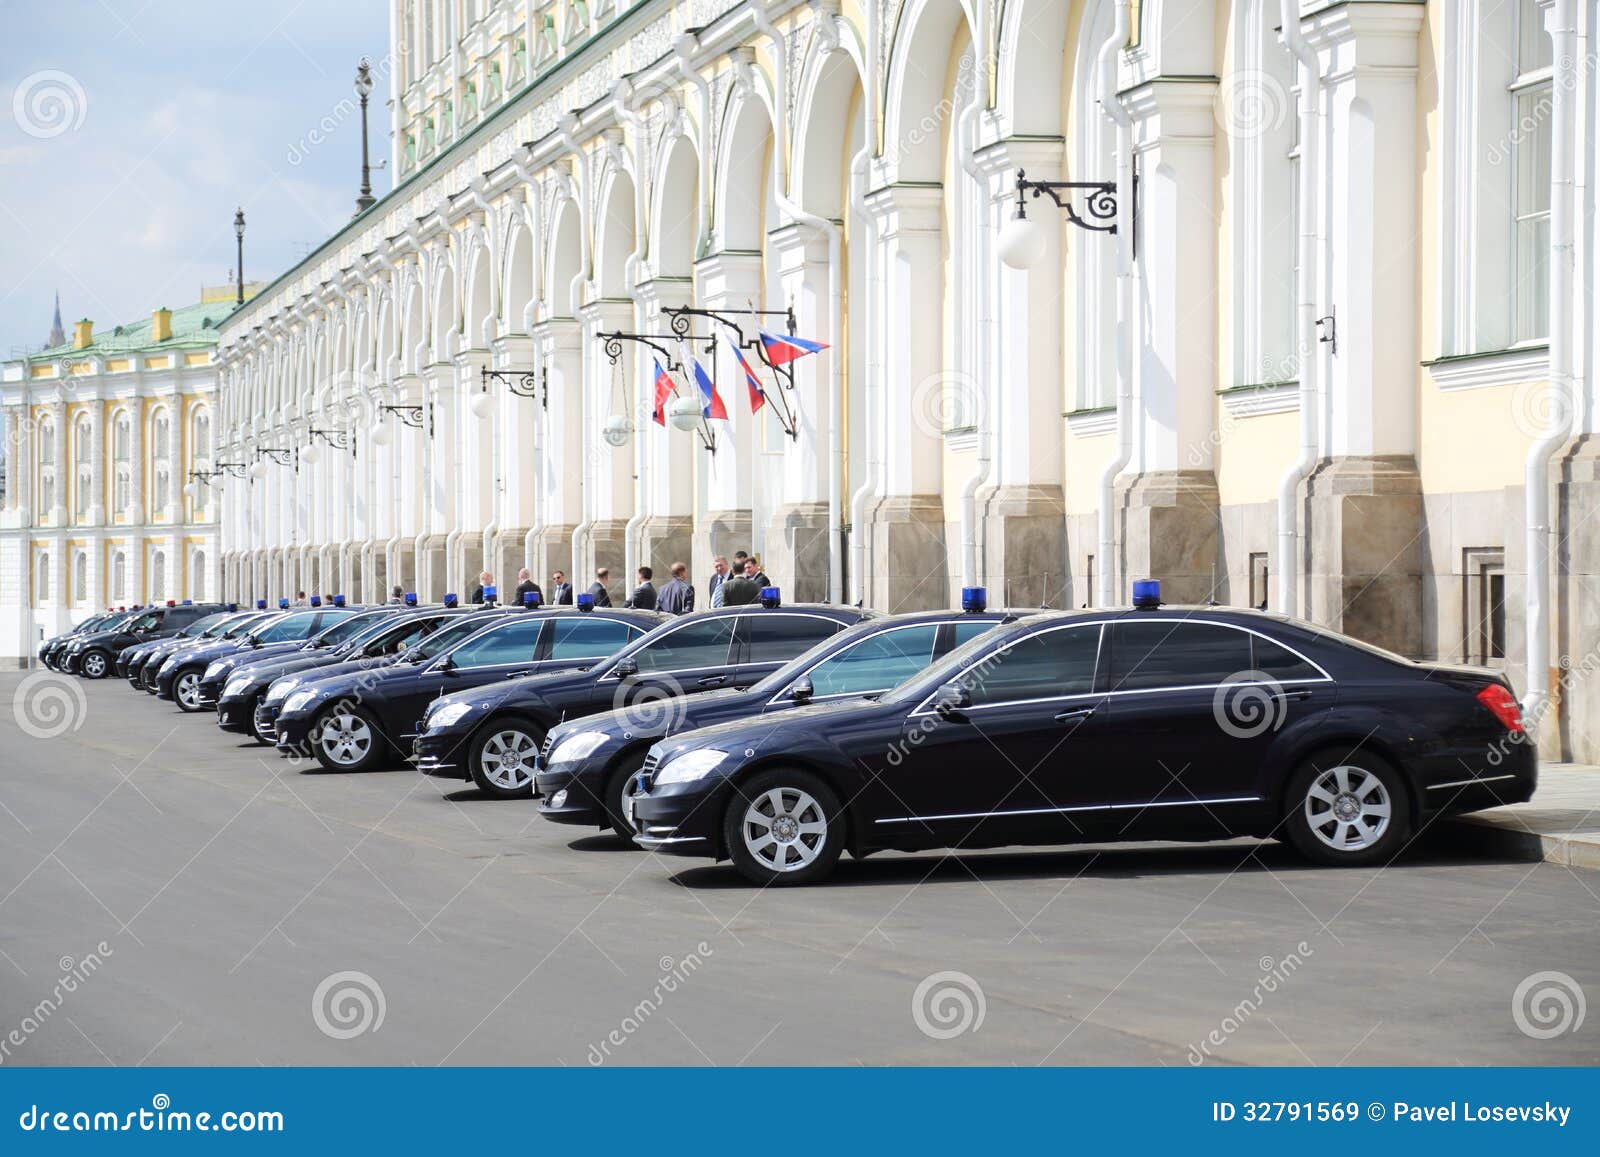 schwarze-regierungsautos-sind-nahe-gro%C3%9Fartigem-der-kreml-palast-32791569.jpg